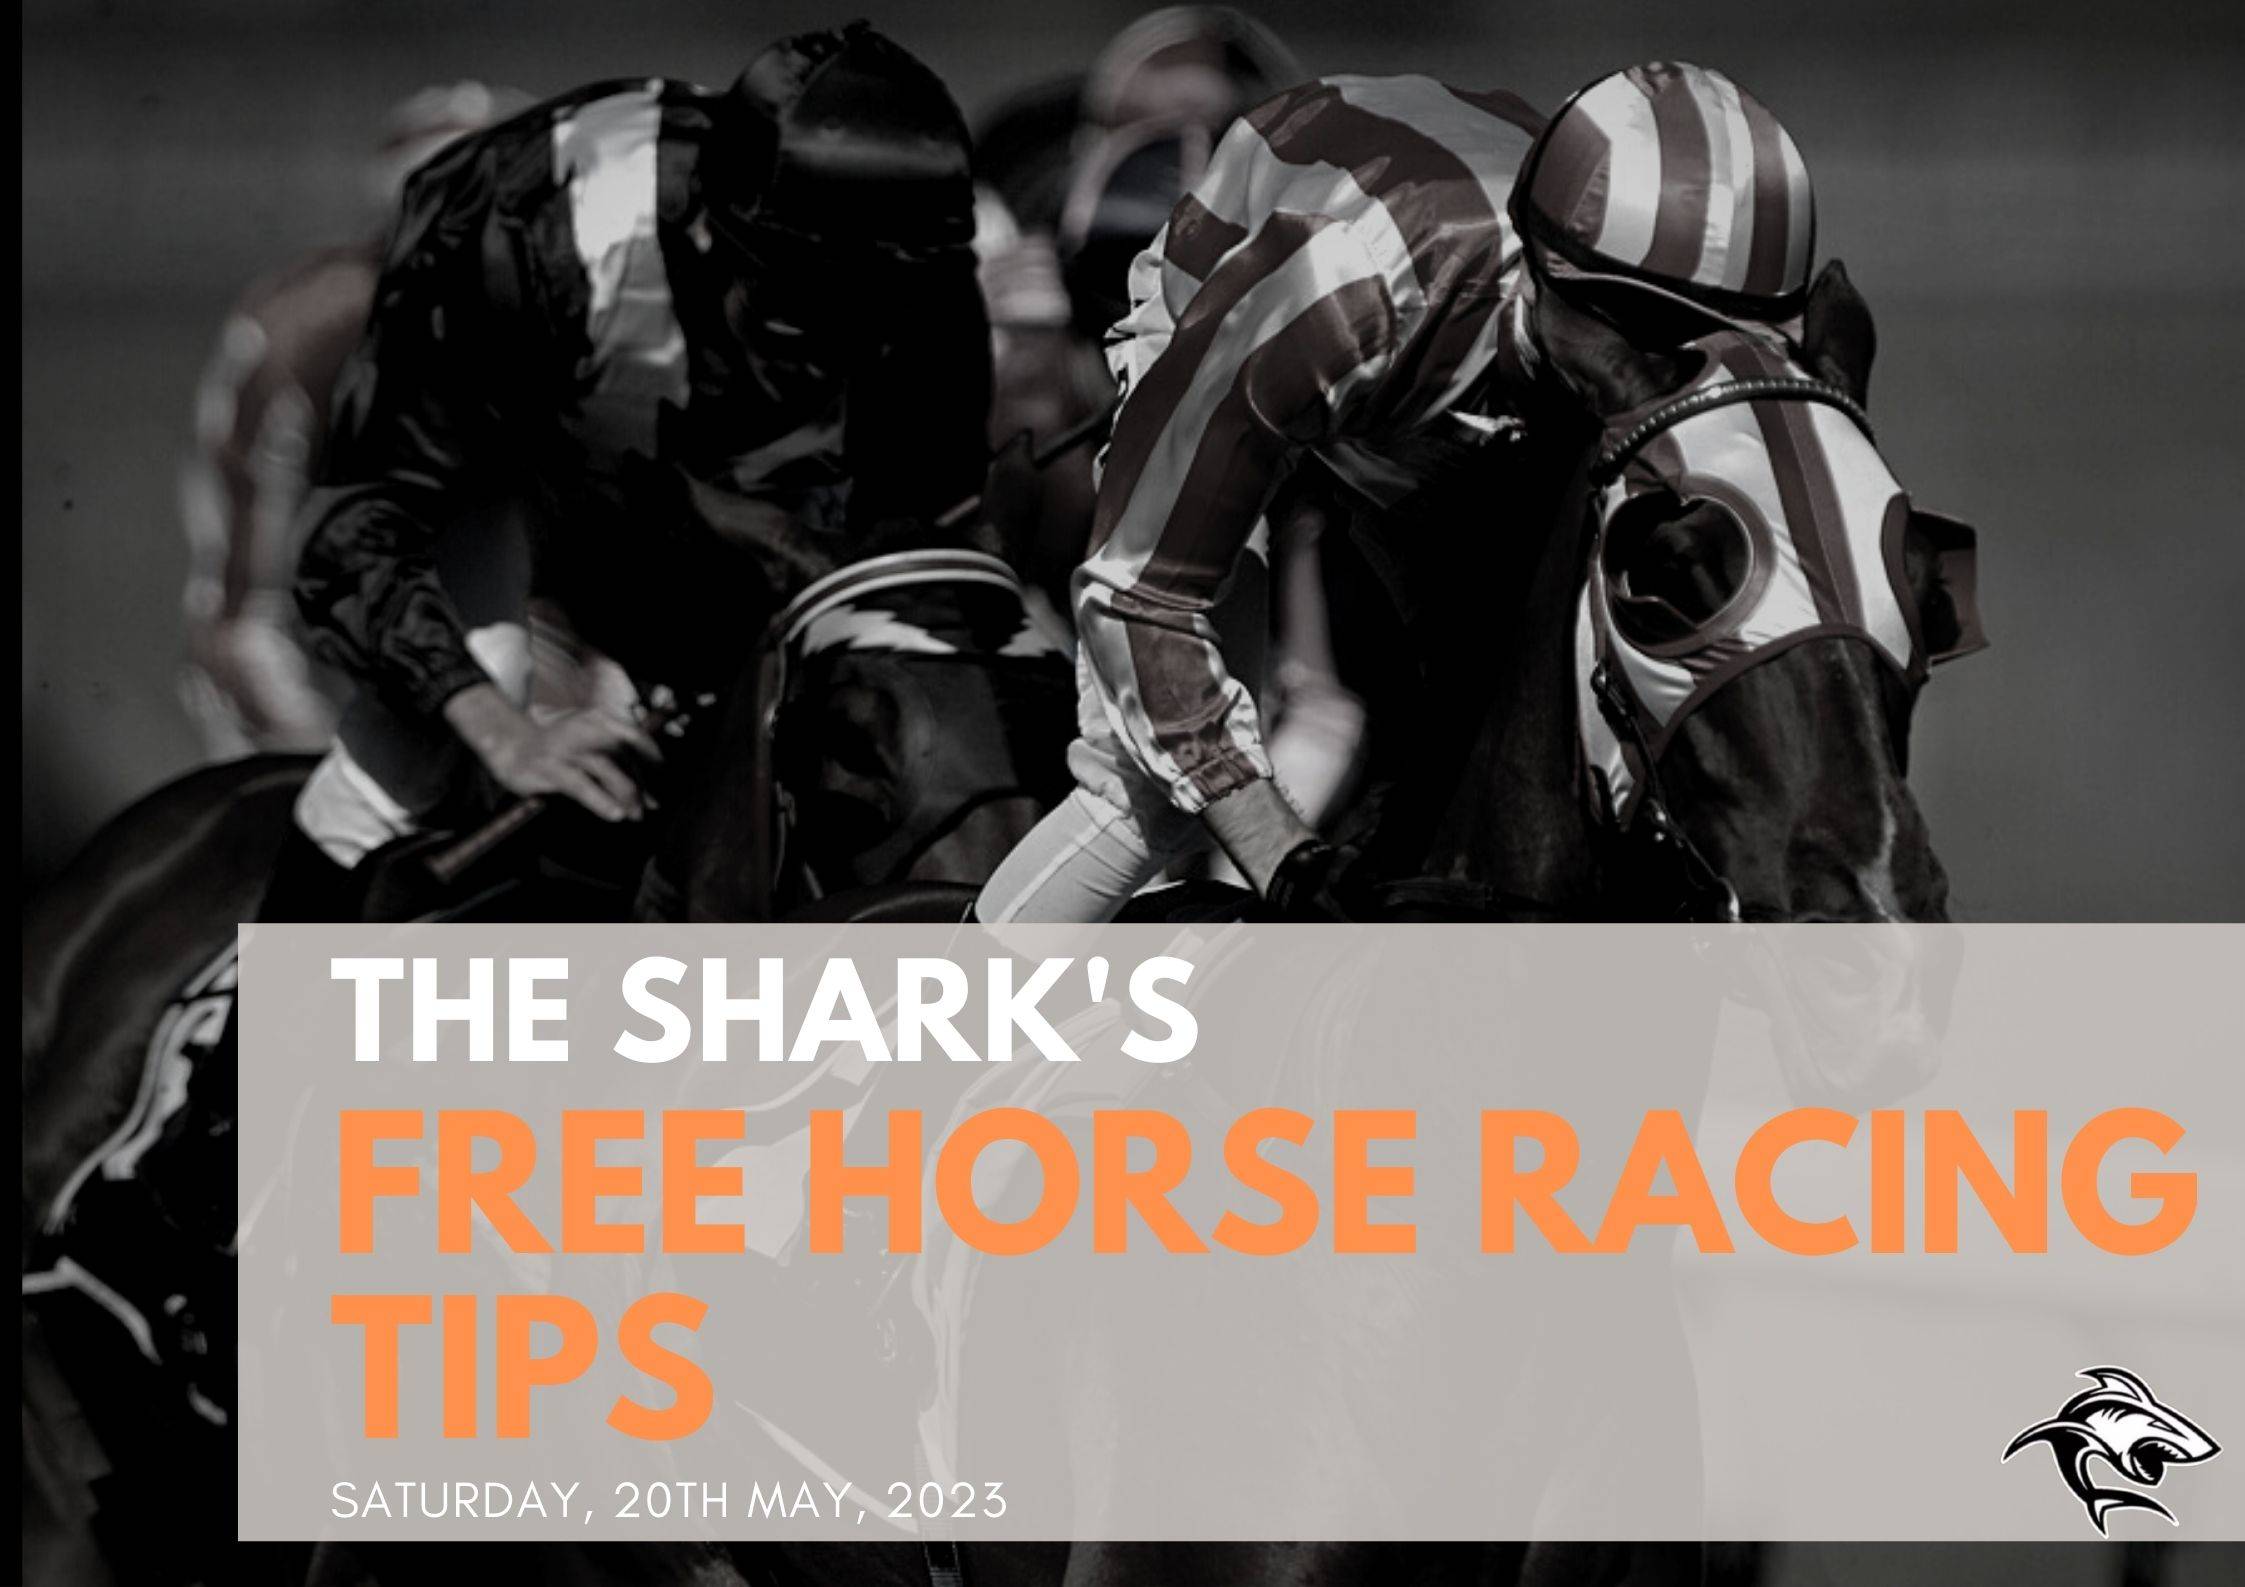 Free Horse Racing Tips - 20th May